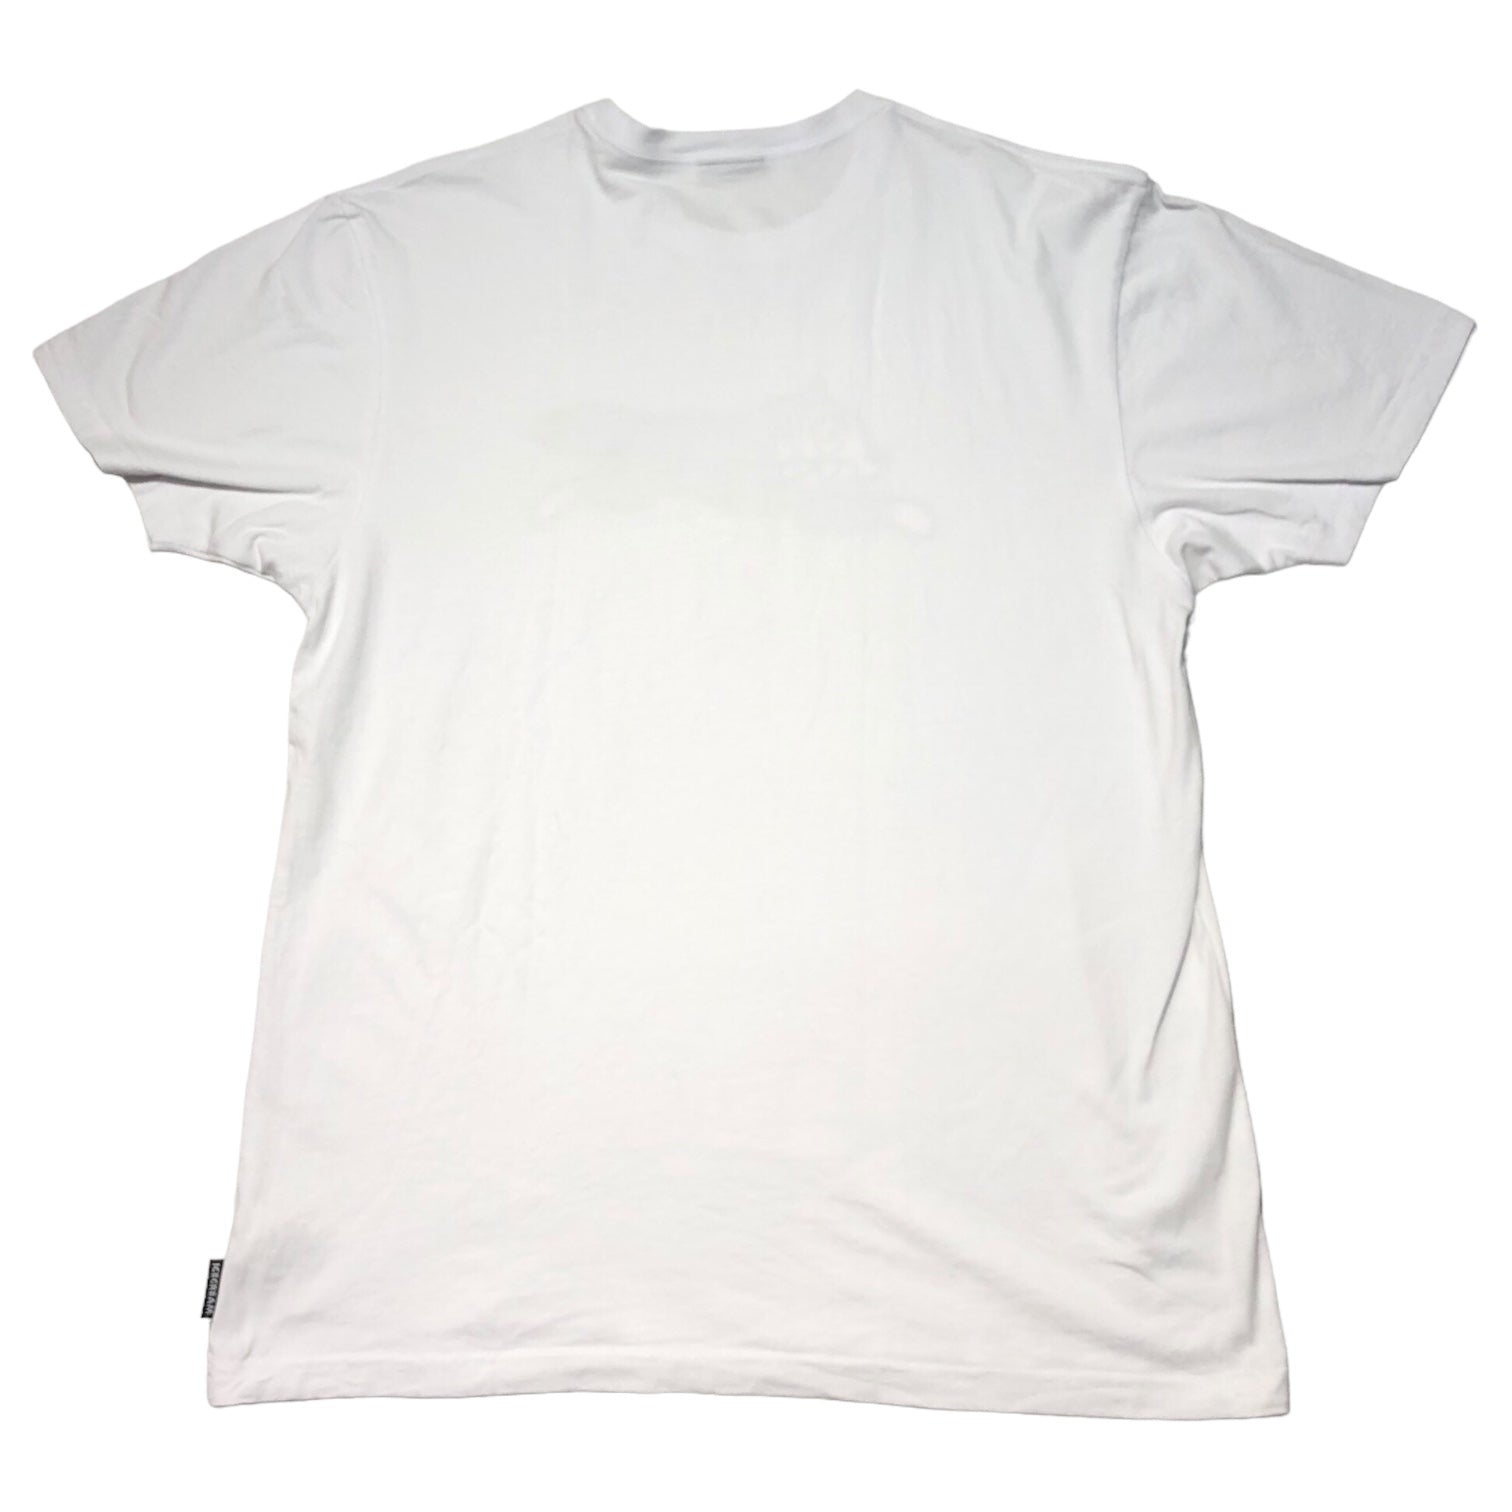 ICE CREAM(アイスクリーム) Running dog logo tee ランニングドッグ ロゴ Tシャツ 401-4203 XL ホワイト×シルバー